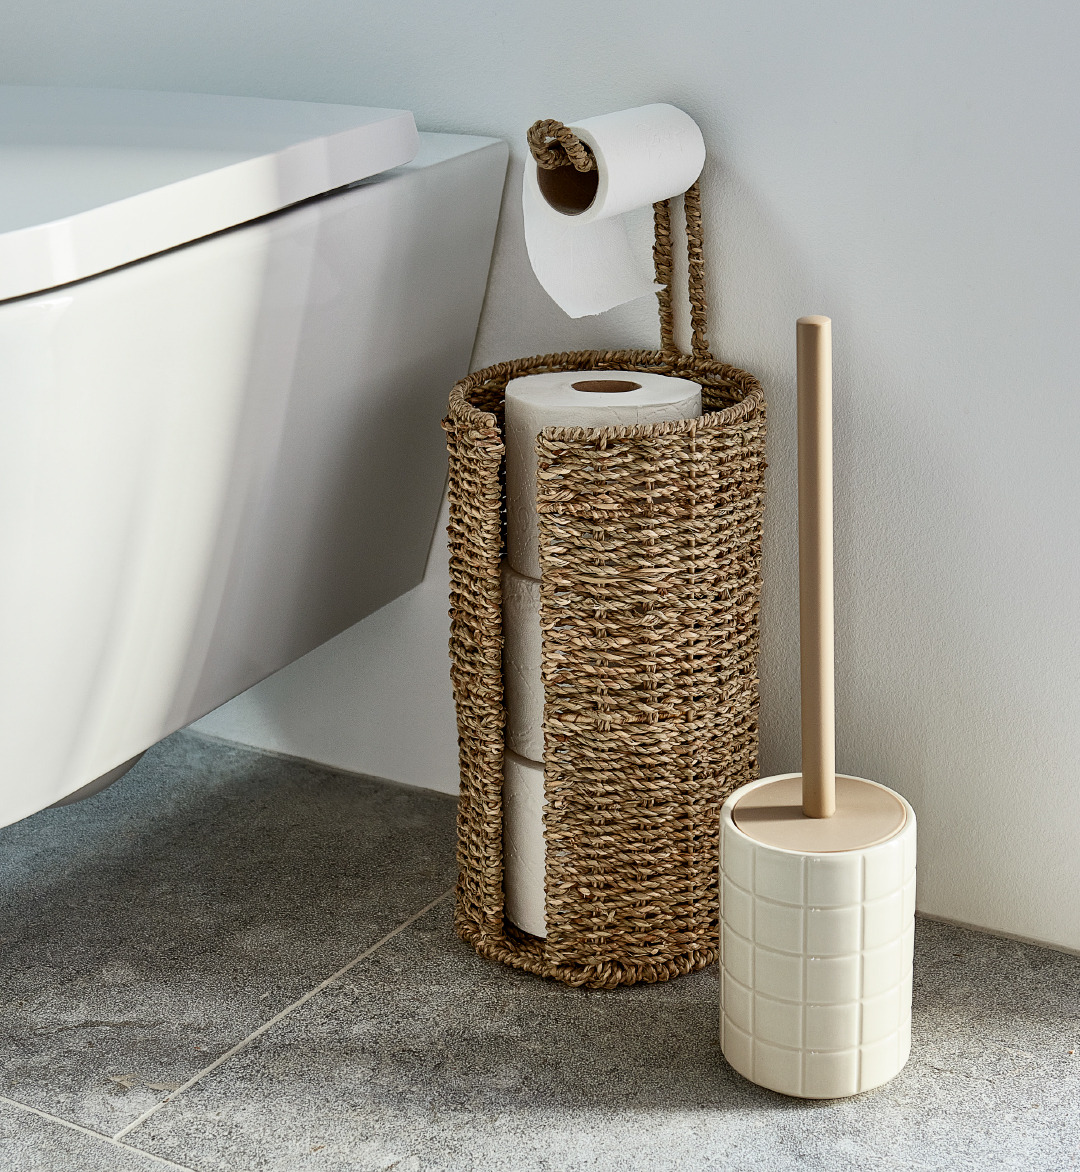 Toiletbørste STENINGE i beige og toiletrulleholder VANSBRO på stenfliser ved siden af toilettet